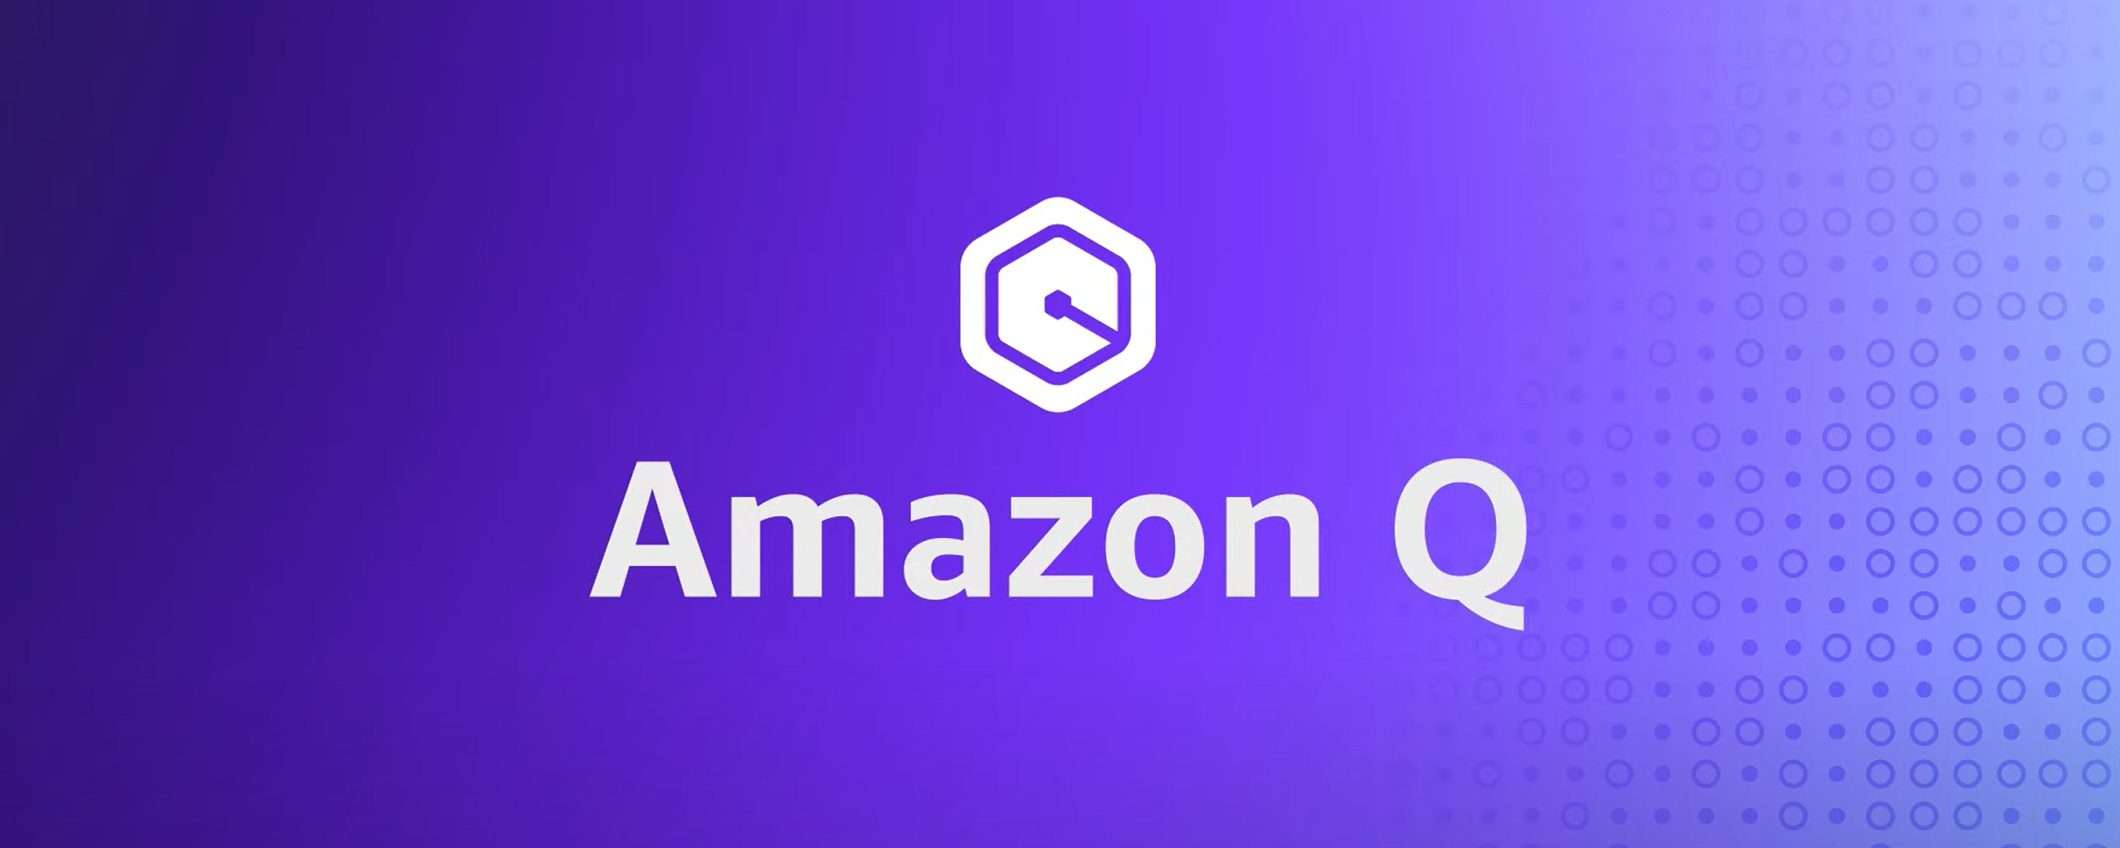 Amazon Q: allucinazioni e leak di dati